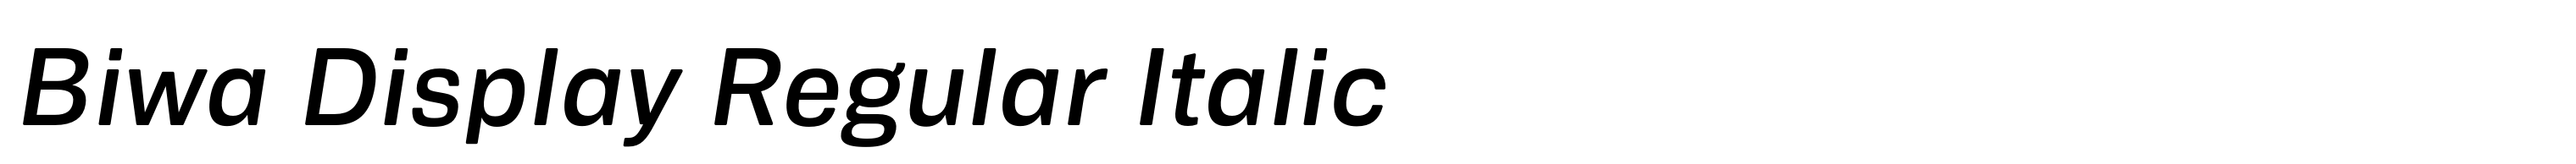 Biwa Display Regular Italic